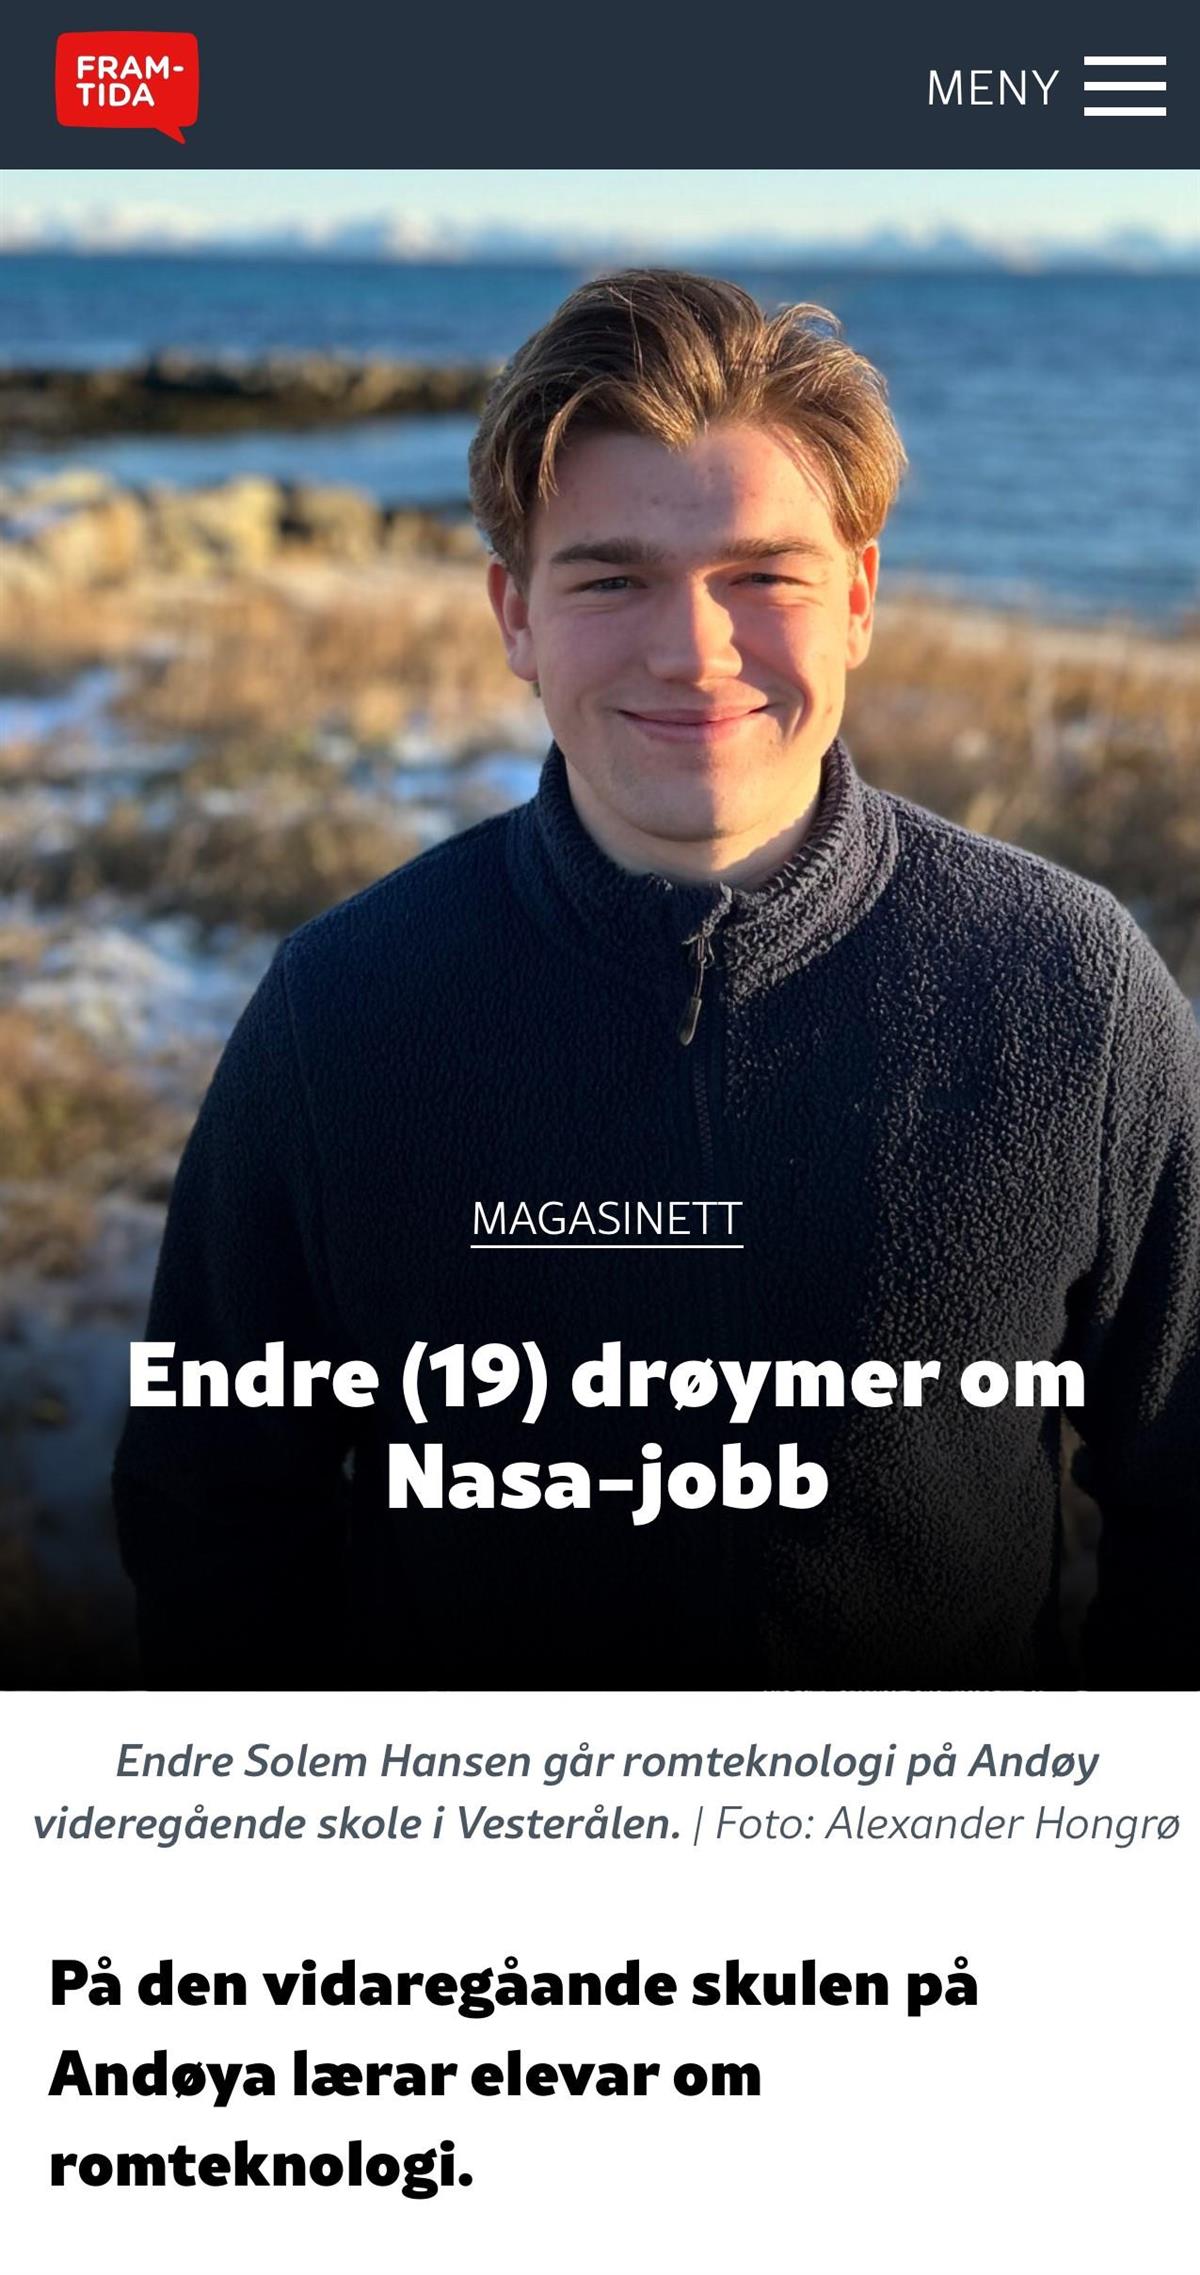 Bilde av ung gutt som smiler foran ei havn. Tekst på bildet er "Endre (19) drøymer om Nasa-jobb" - Klikk for stort bilde